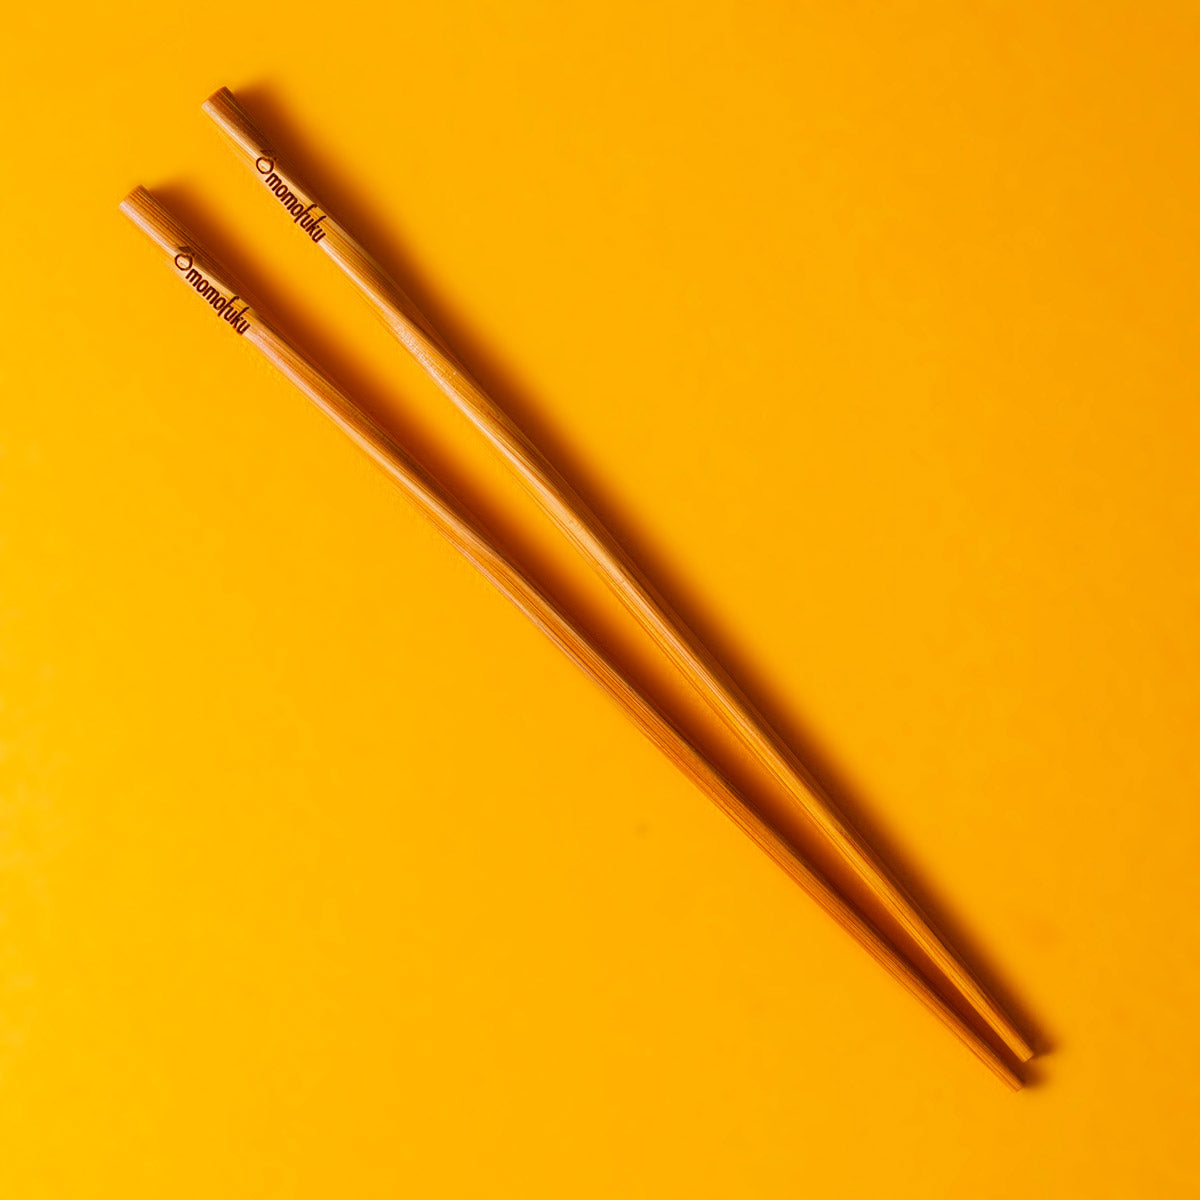 Pair of Momofuku chopsticks